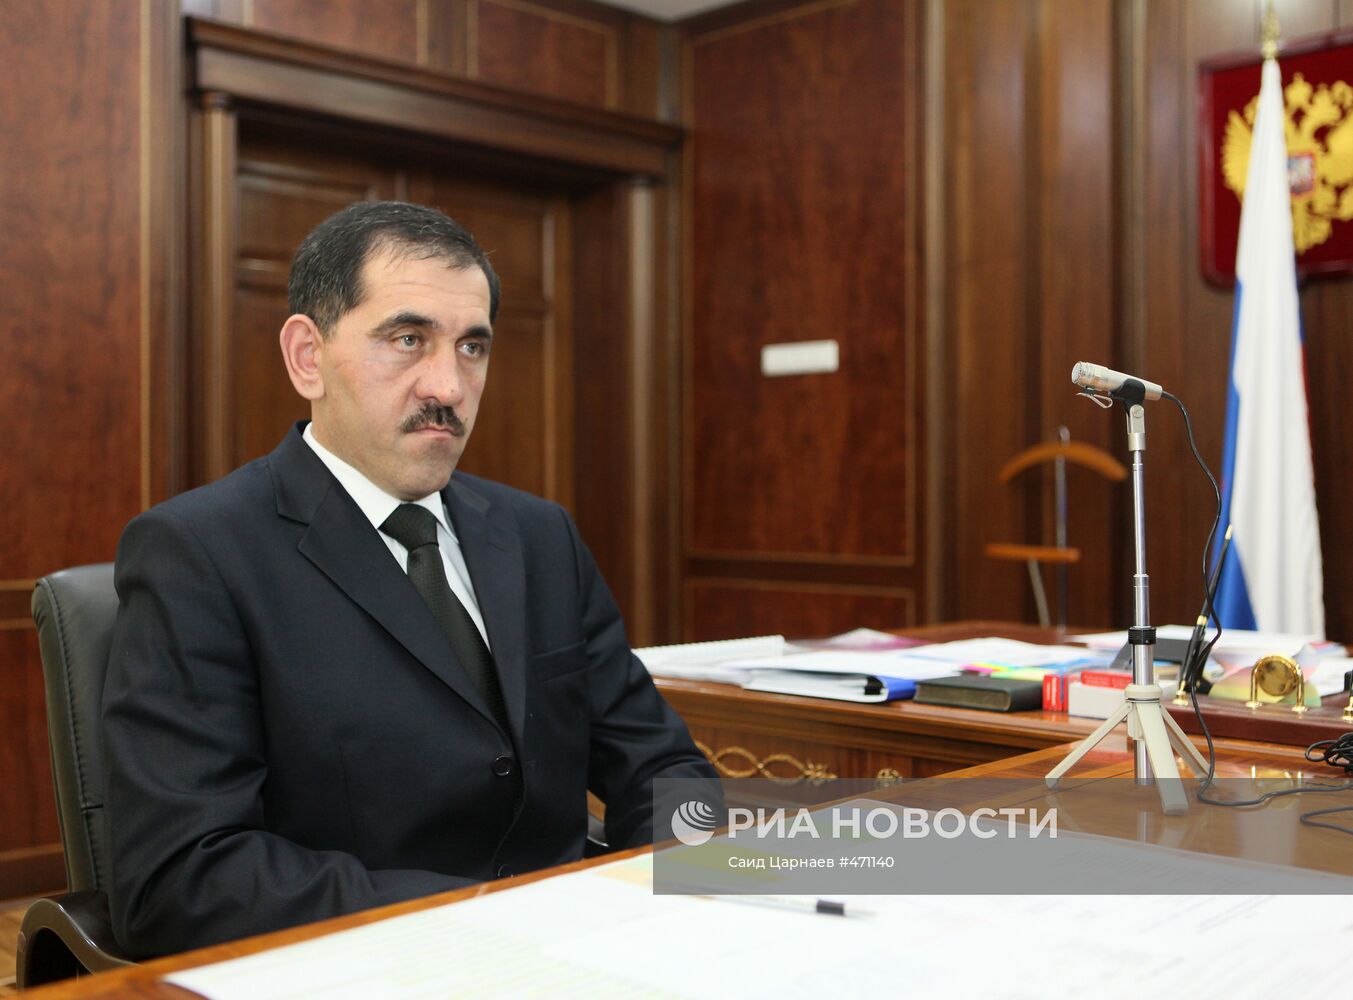 Интервью президента Ингушетии агентству РИА новости